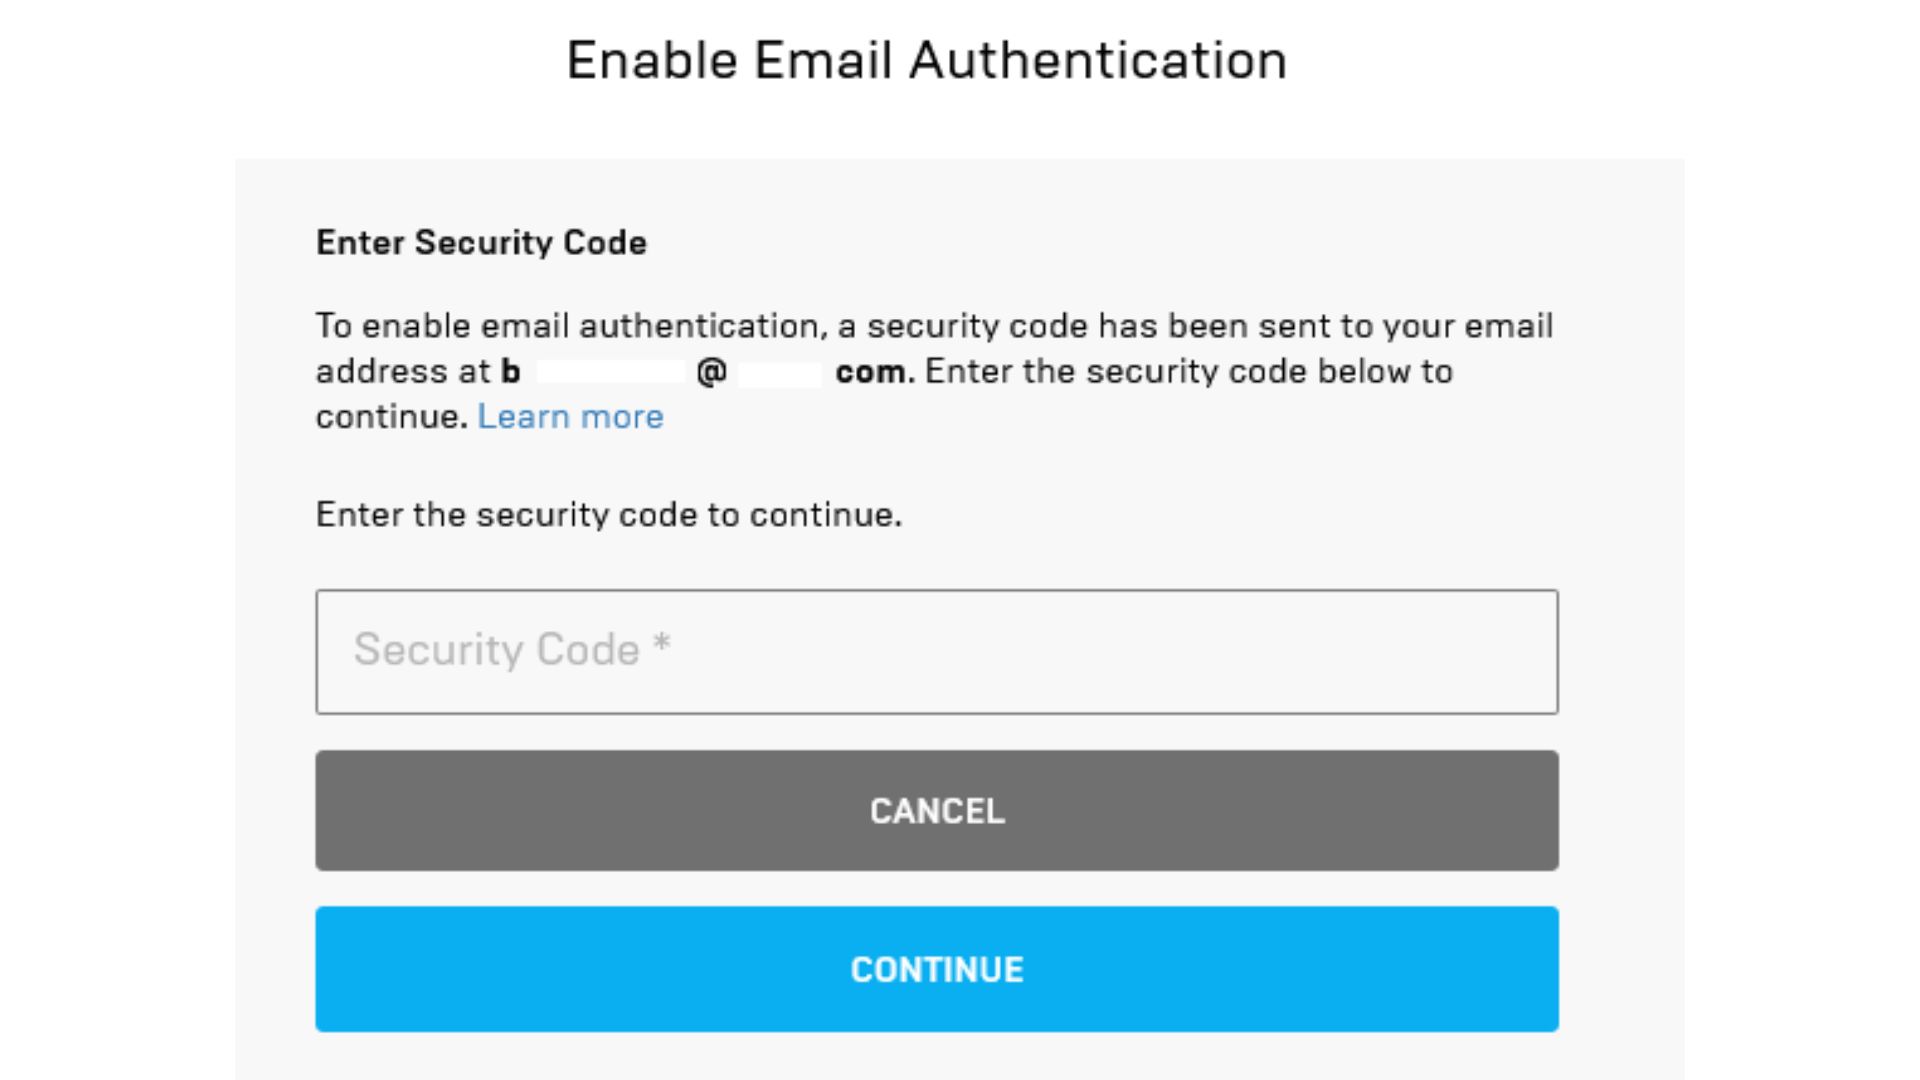 Enable authentication. Epic games двухфакторная аутентификация. Электронная почта ЭПИК геймс и пароль. Enter Security email:. Как подтвердить адрес электронной почты на ps4.